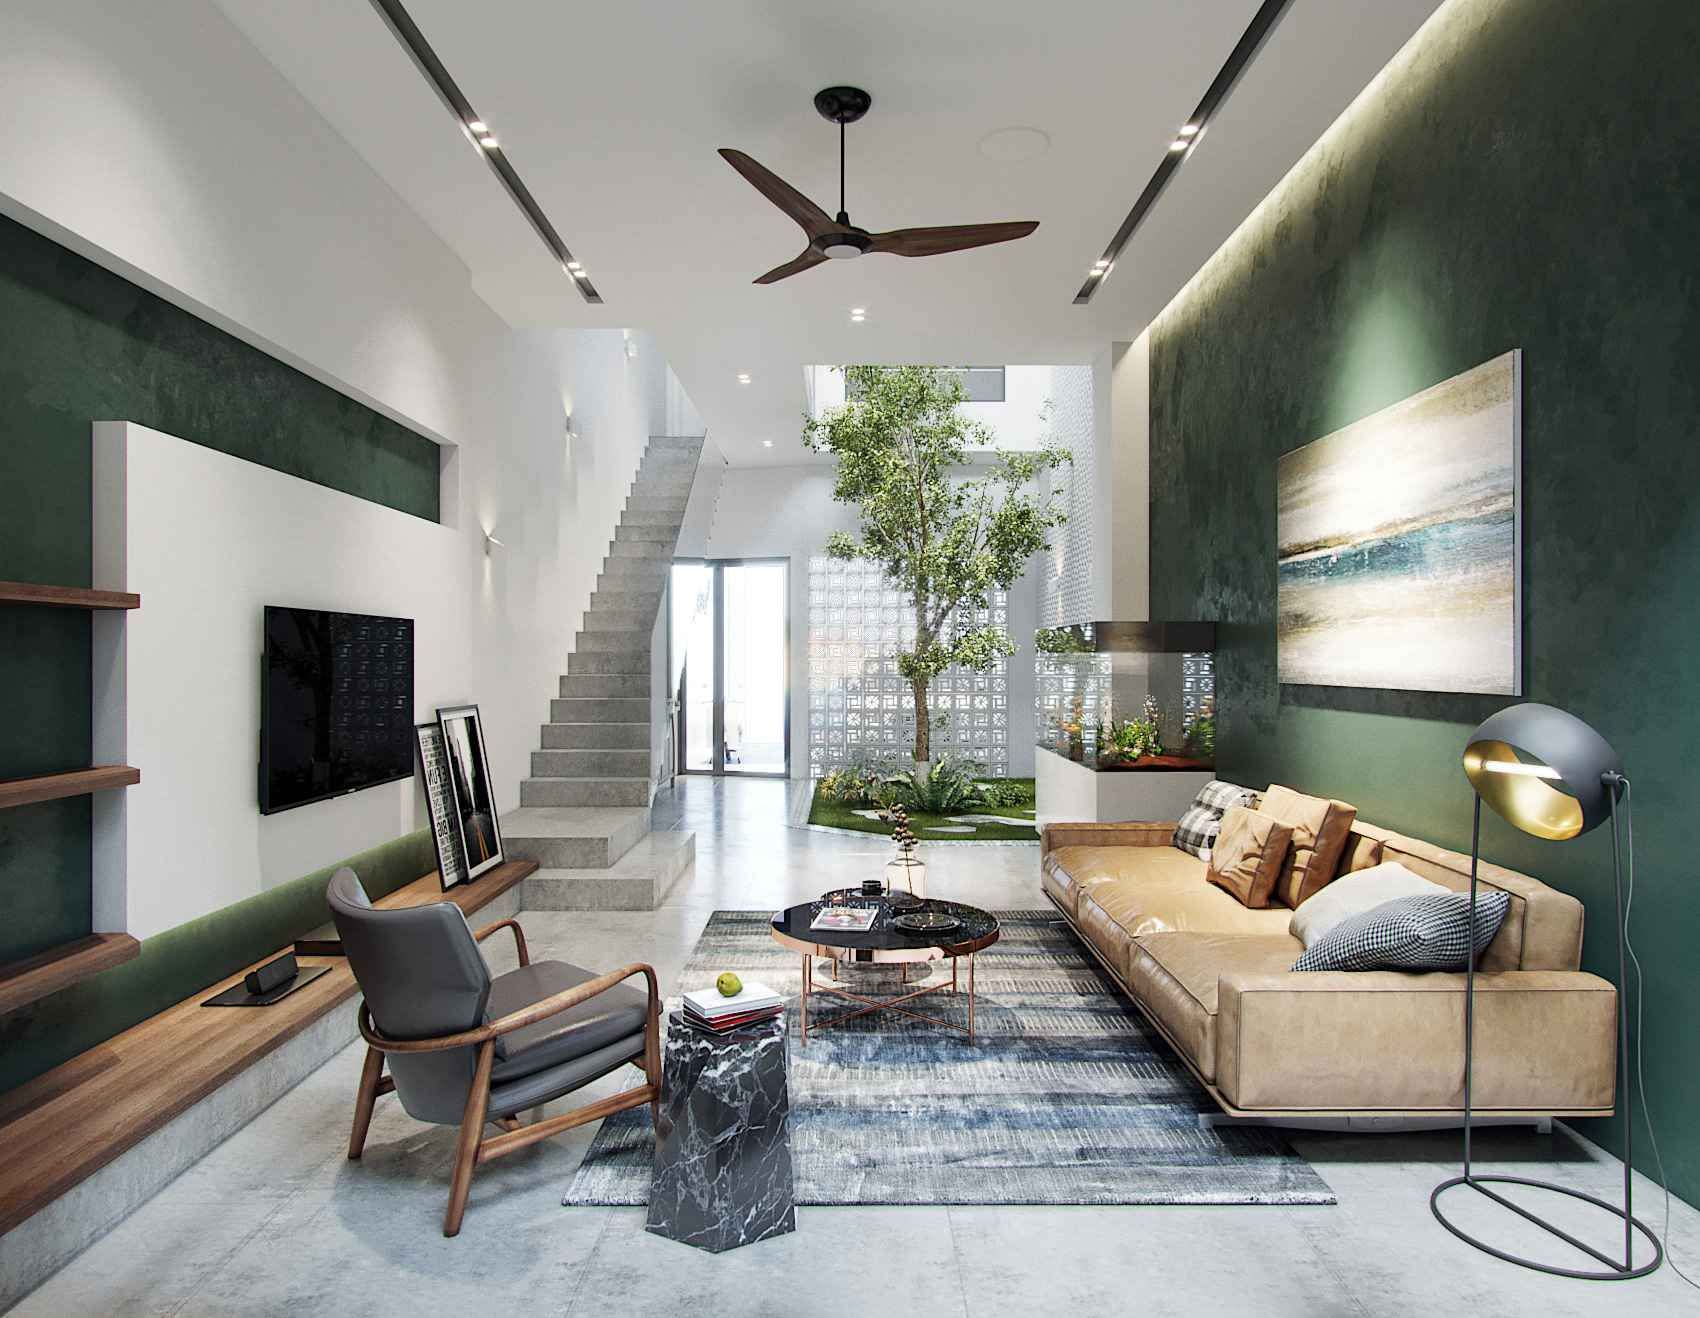 Thiết kế phòng khách nhà ống với tông màu xanh lá mát mẻ phối cùng nội thất màu nâu gỗ phù hợp với gia chủ mệnh mộc